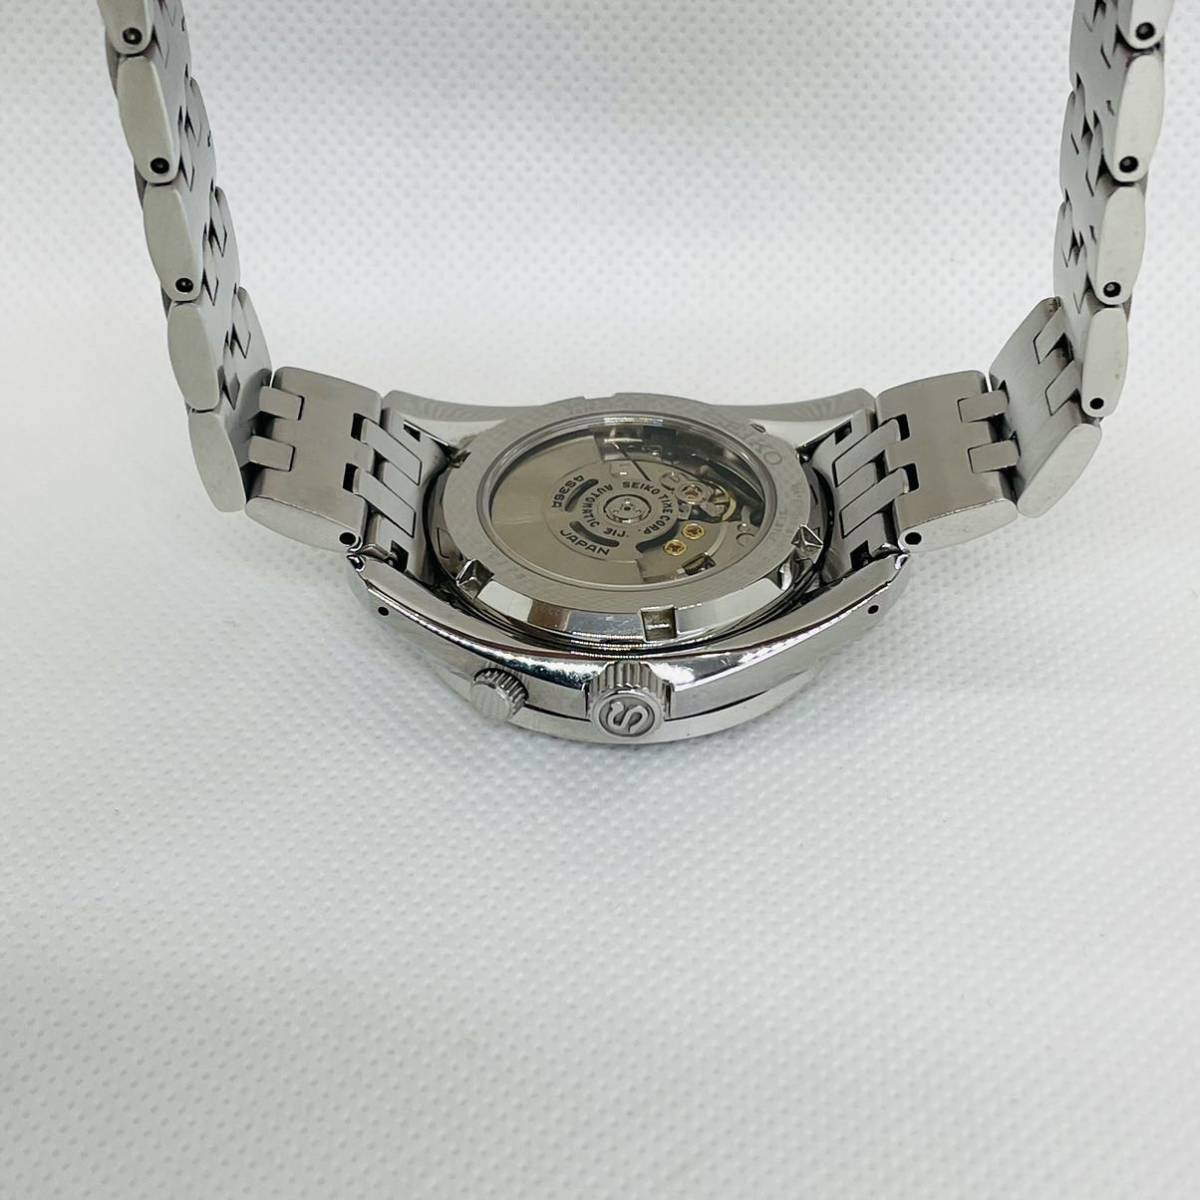 SEIKO 自動巻き GMT 4S36-00A0 腕時計セイコー メカニカル ジュビリー